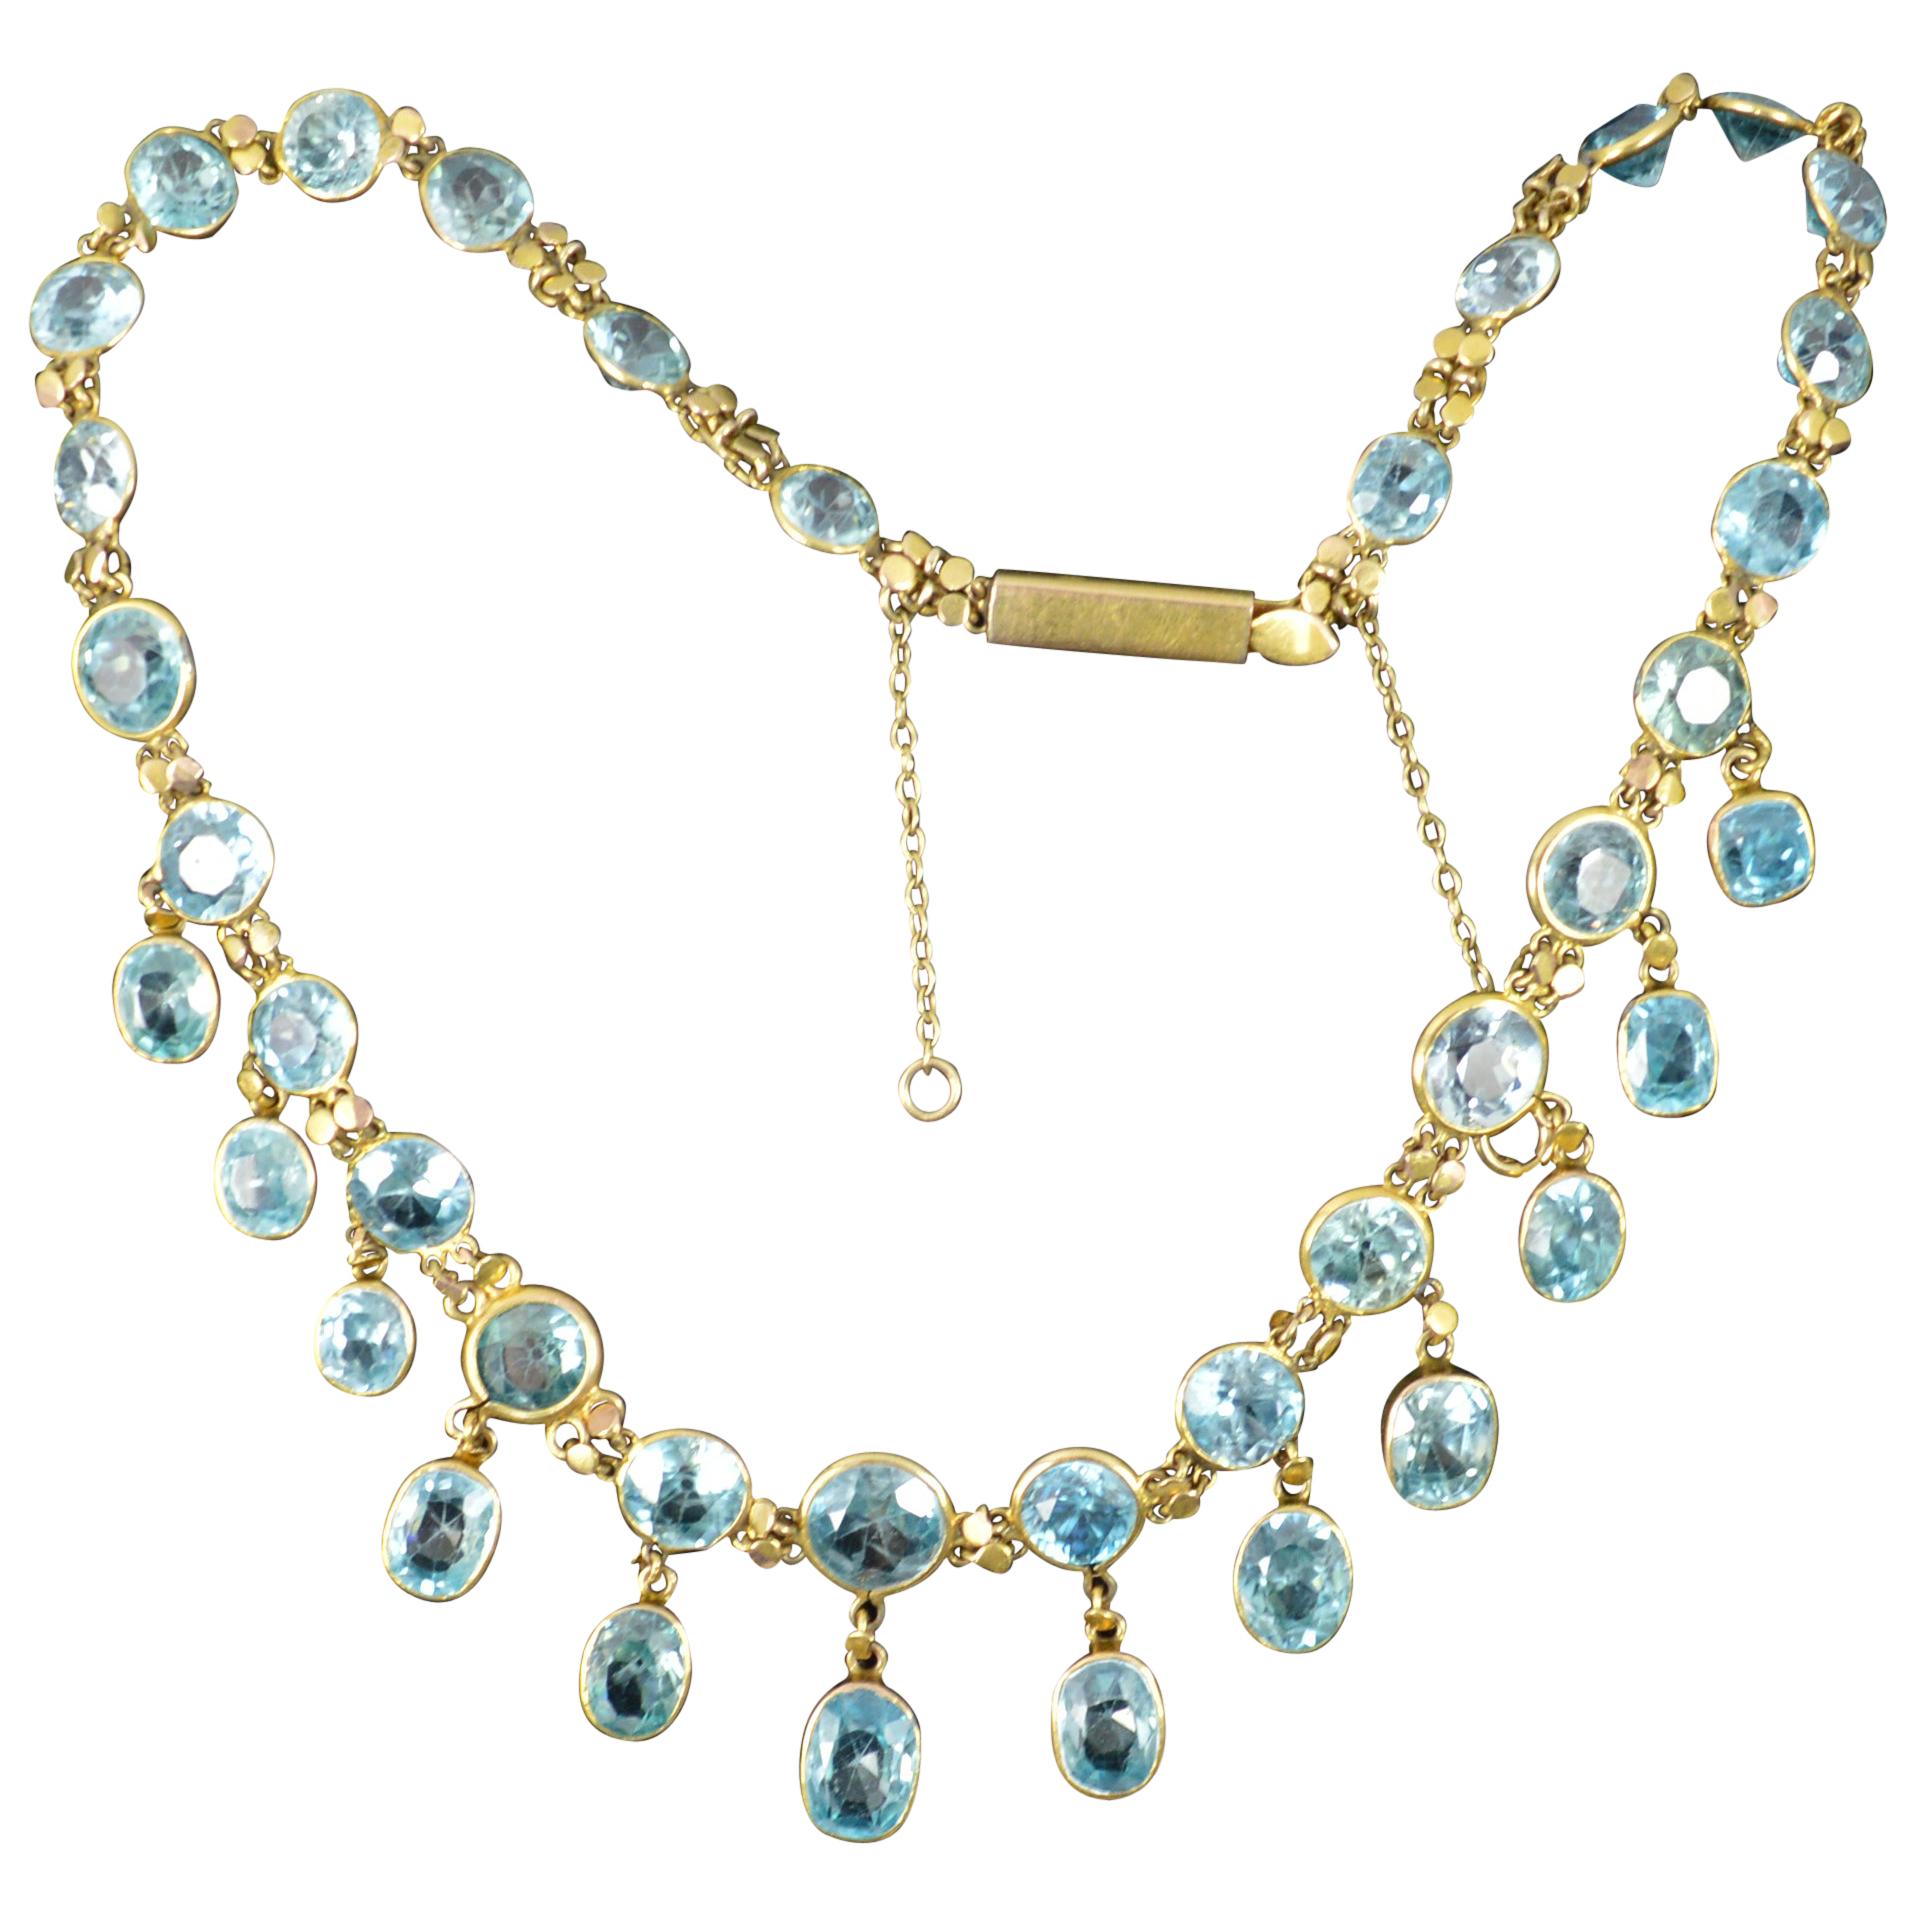 Viktorianische Riviere-Halskette aus 9 Karat Gold und blauem Zirkon, viktorianisch